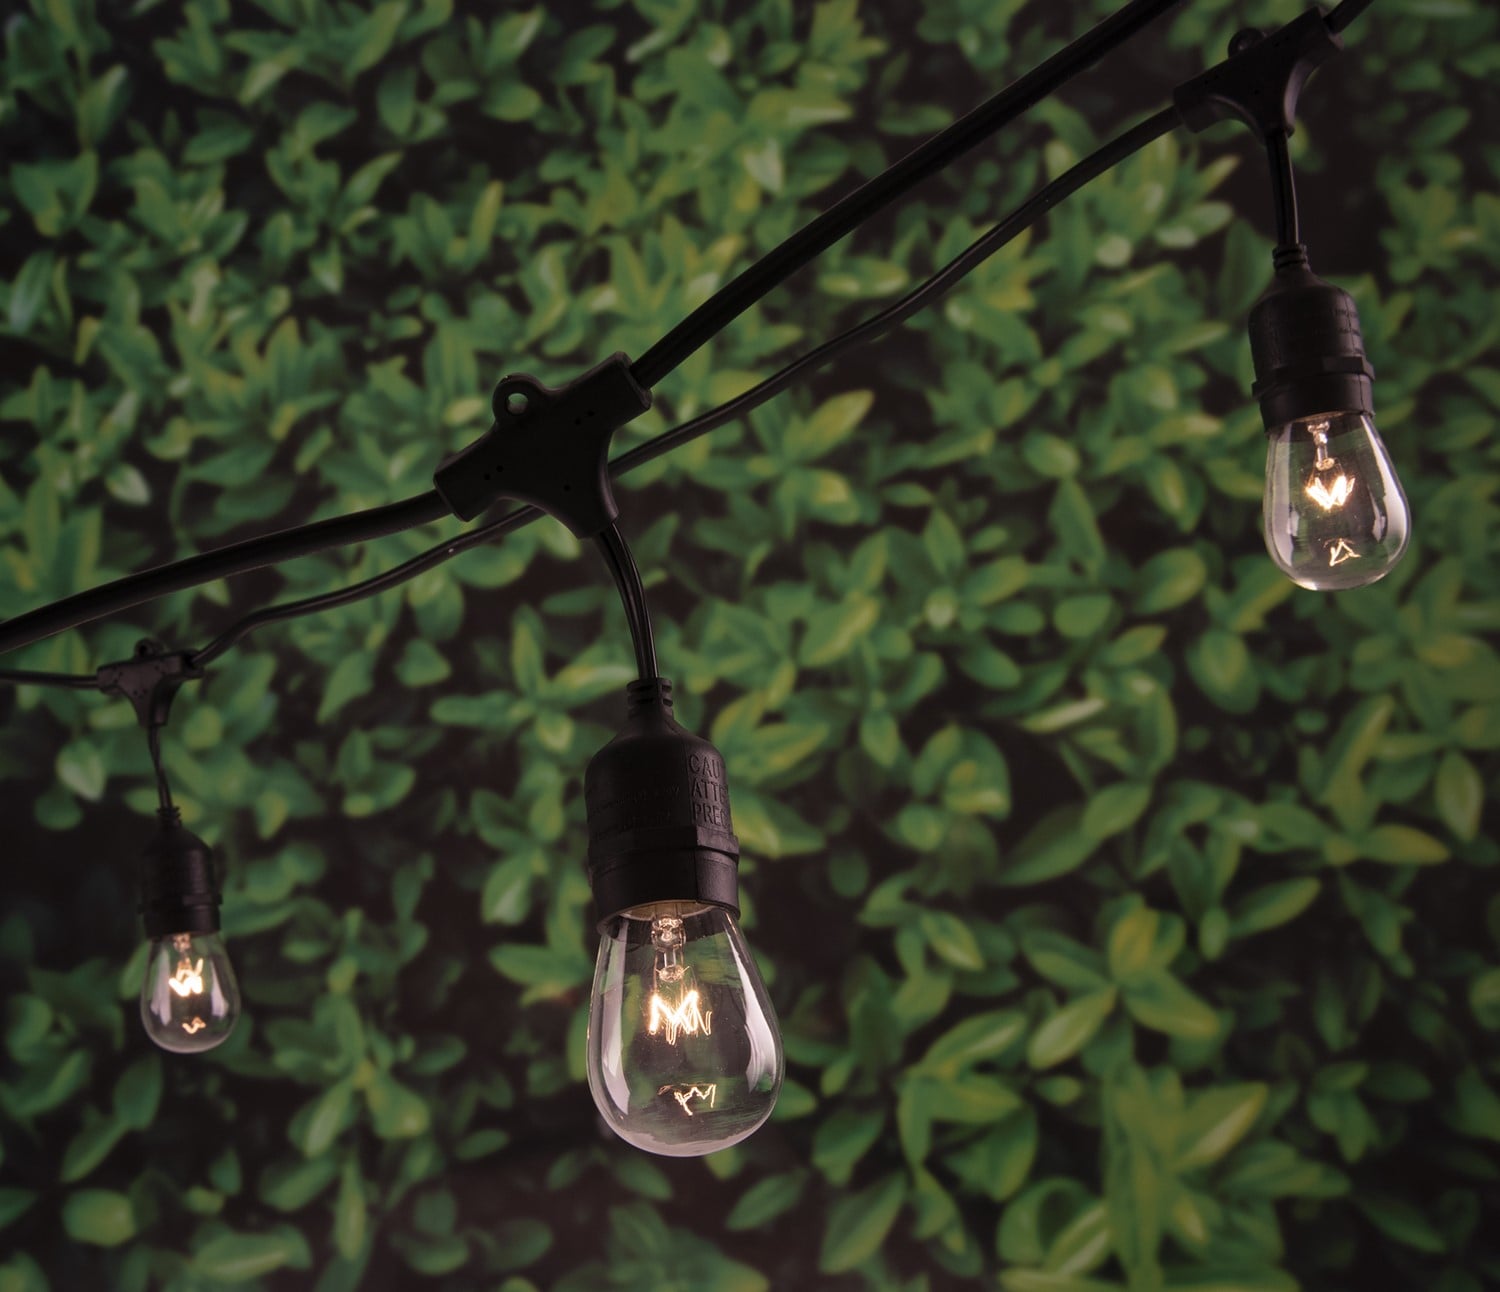 24 ft., 12-Bulb Shatterproof Outdoor LED String Lights, Black